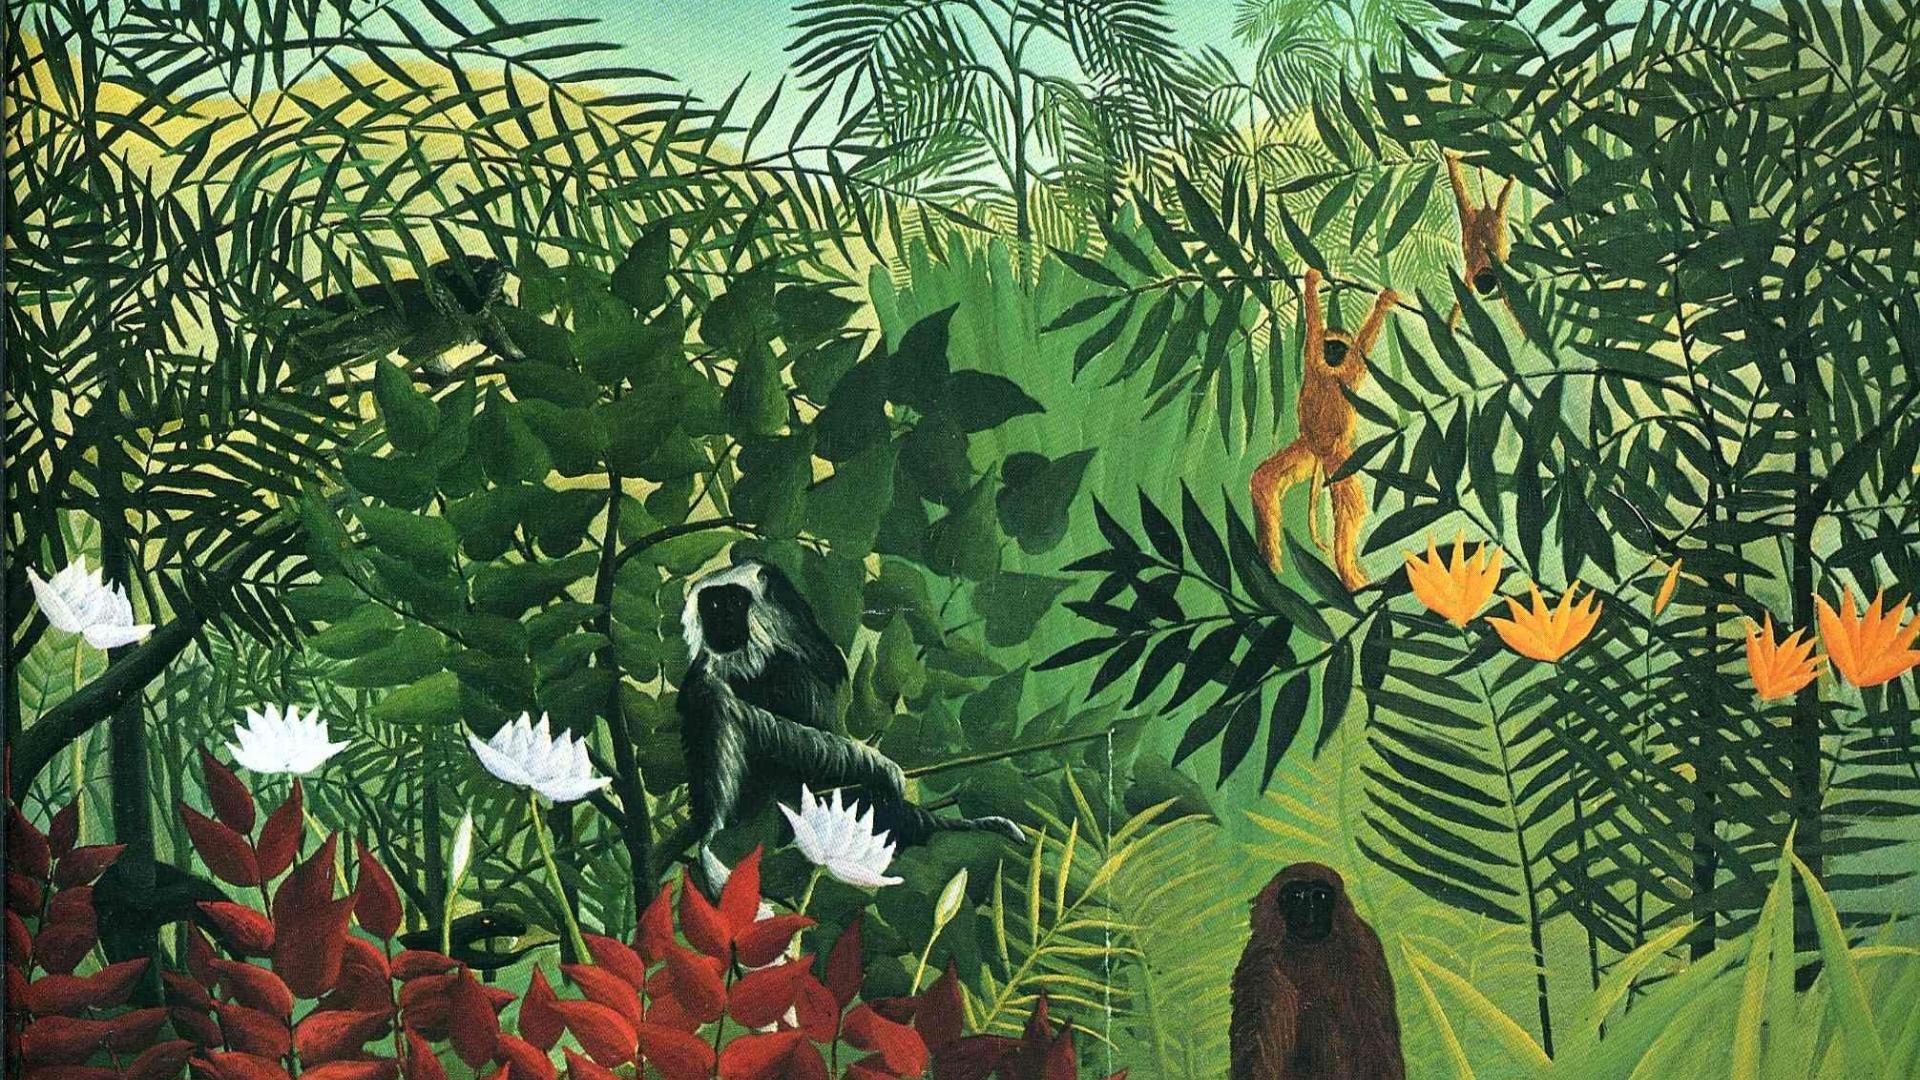 نقاشی جنگل آریاس جذاب ترین اثر آنری روسو با کیفیت بالا 